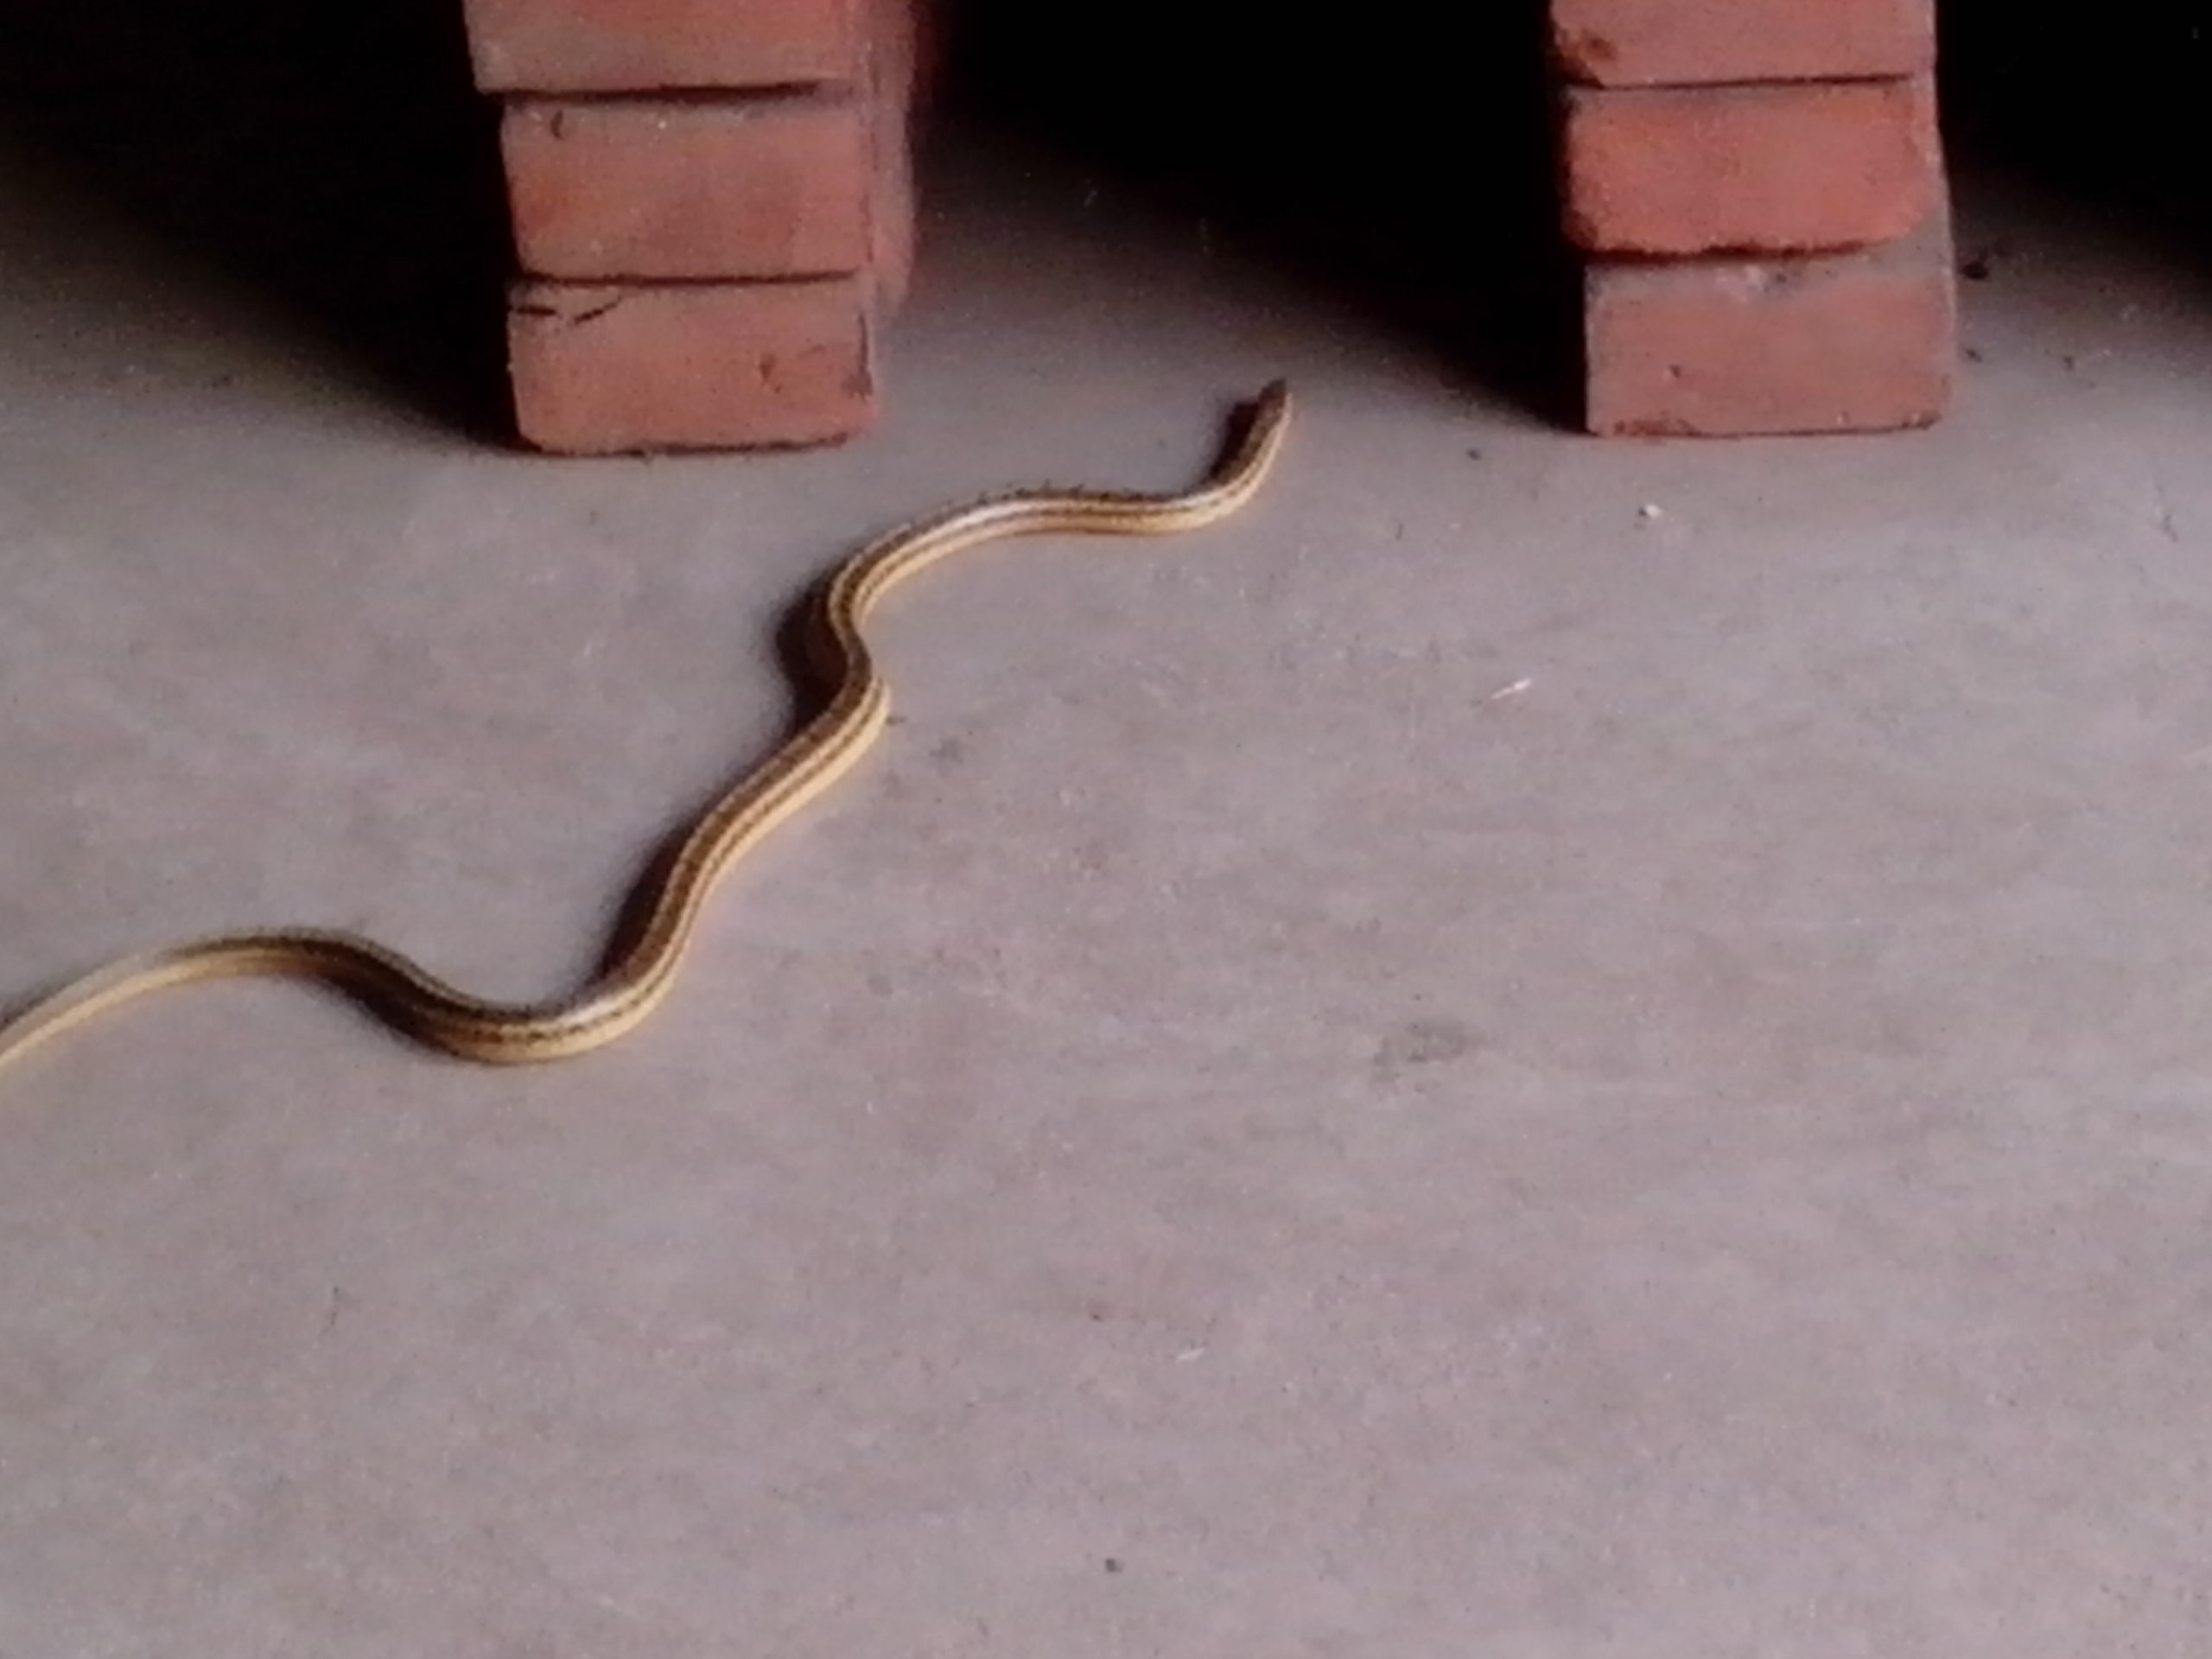 我很怕蛇,家里有小孩更怕啊!这条蛇是毒蛇吗?怎么让蛇不来我家啊?